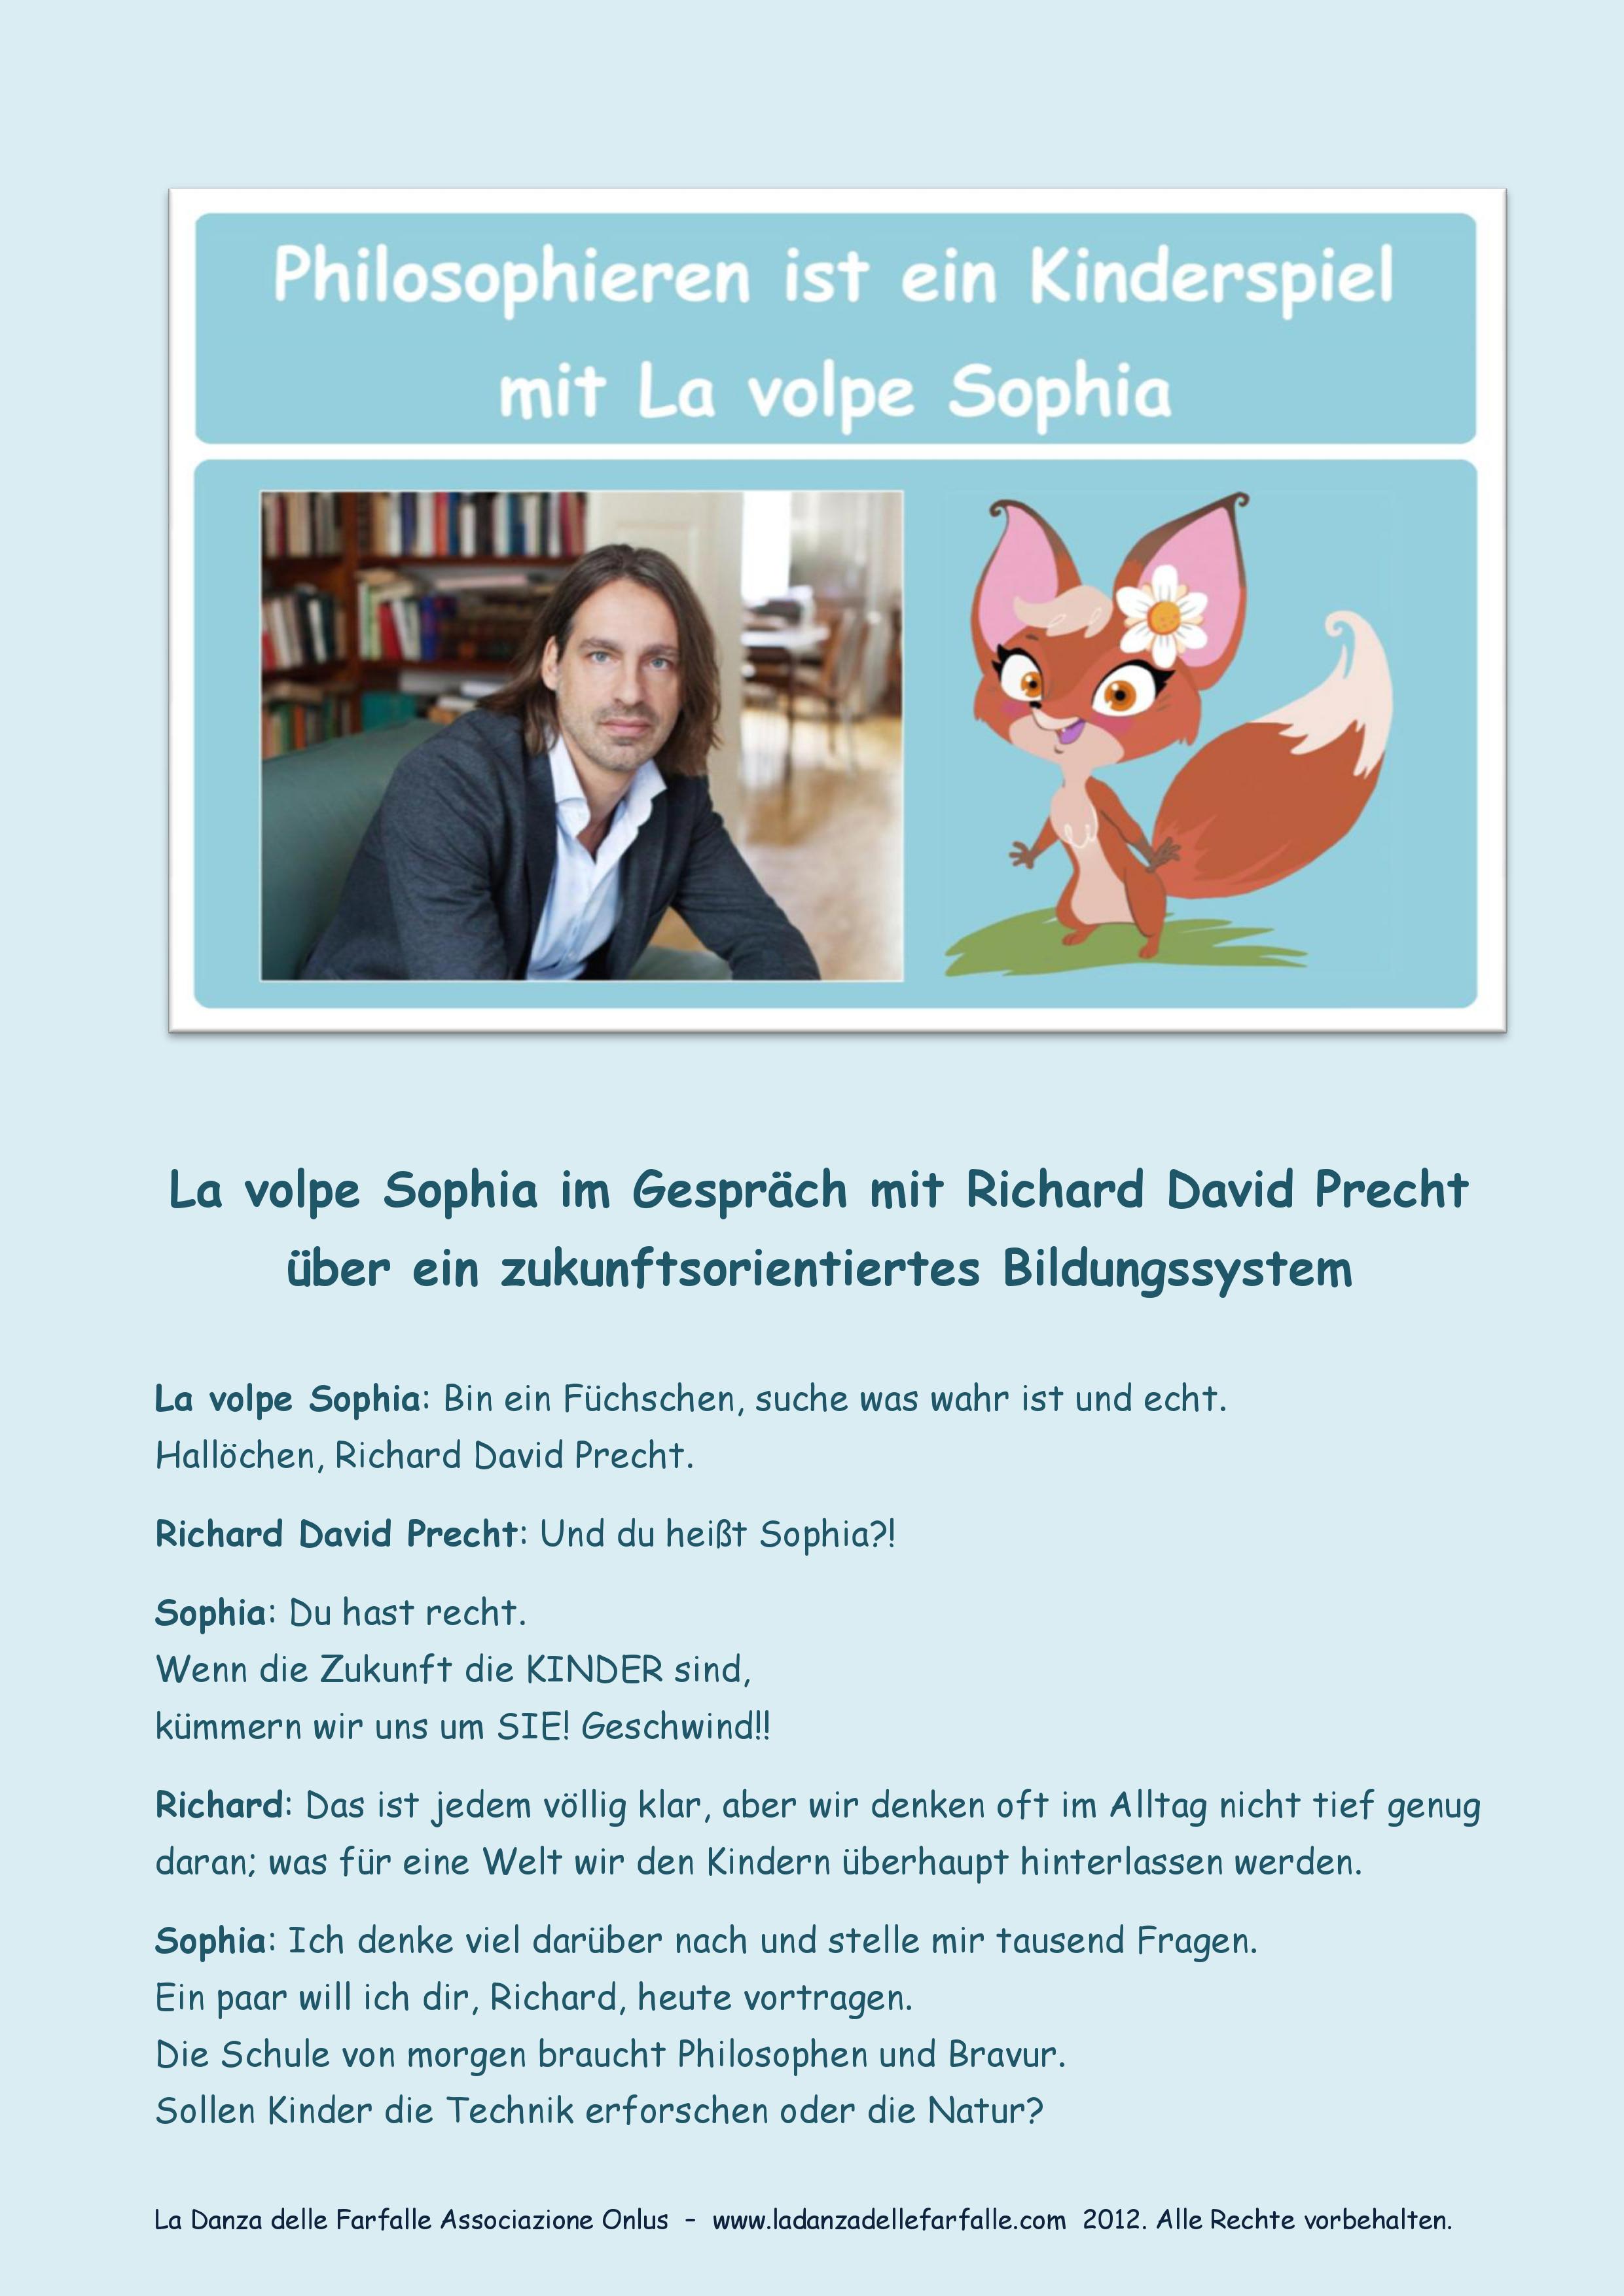 La volpe Sophia im Gespräch mit Richard David Precht über ein zukunftsorientiertes Bildungssystem PhilCologne Köln im Juni 2017 1